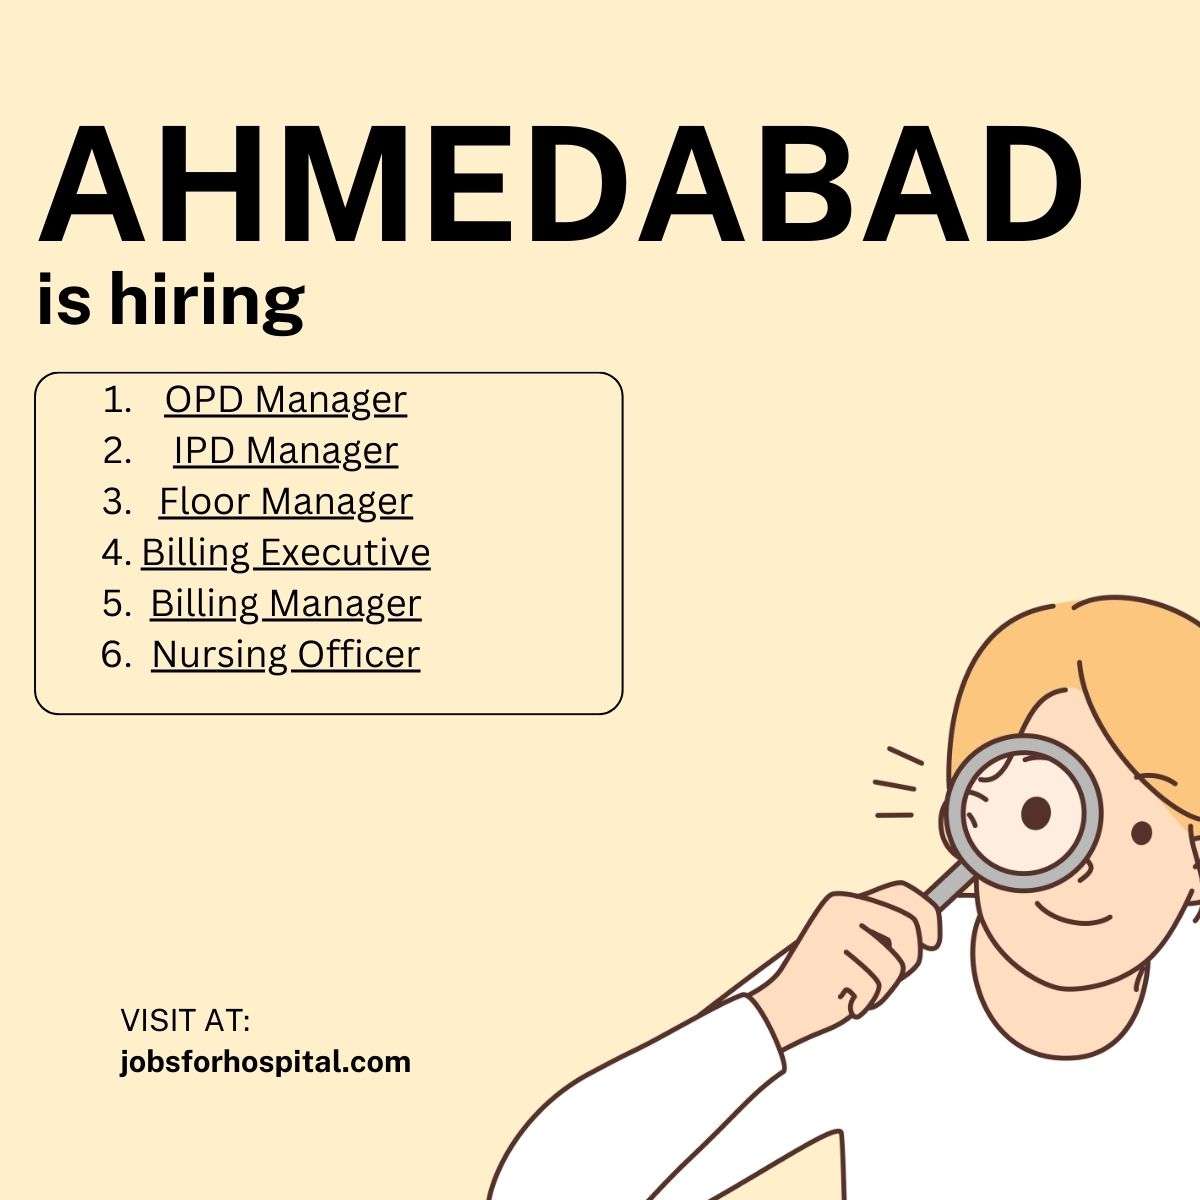 Ahmedabad is hiring. jobsforhospital.com